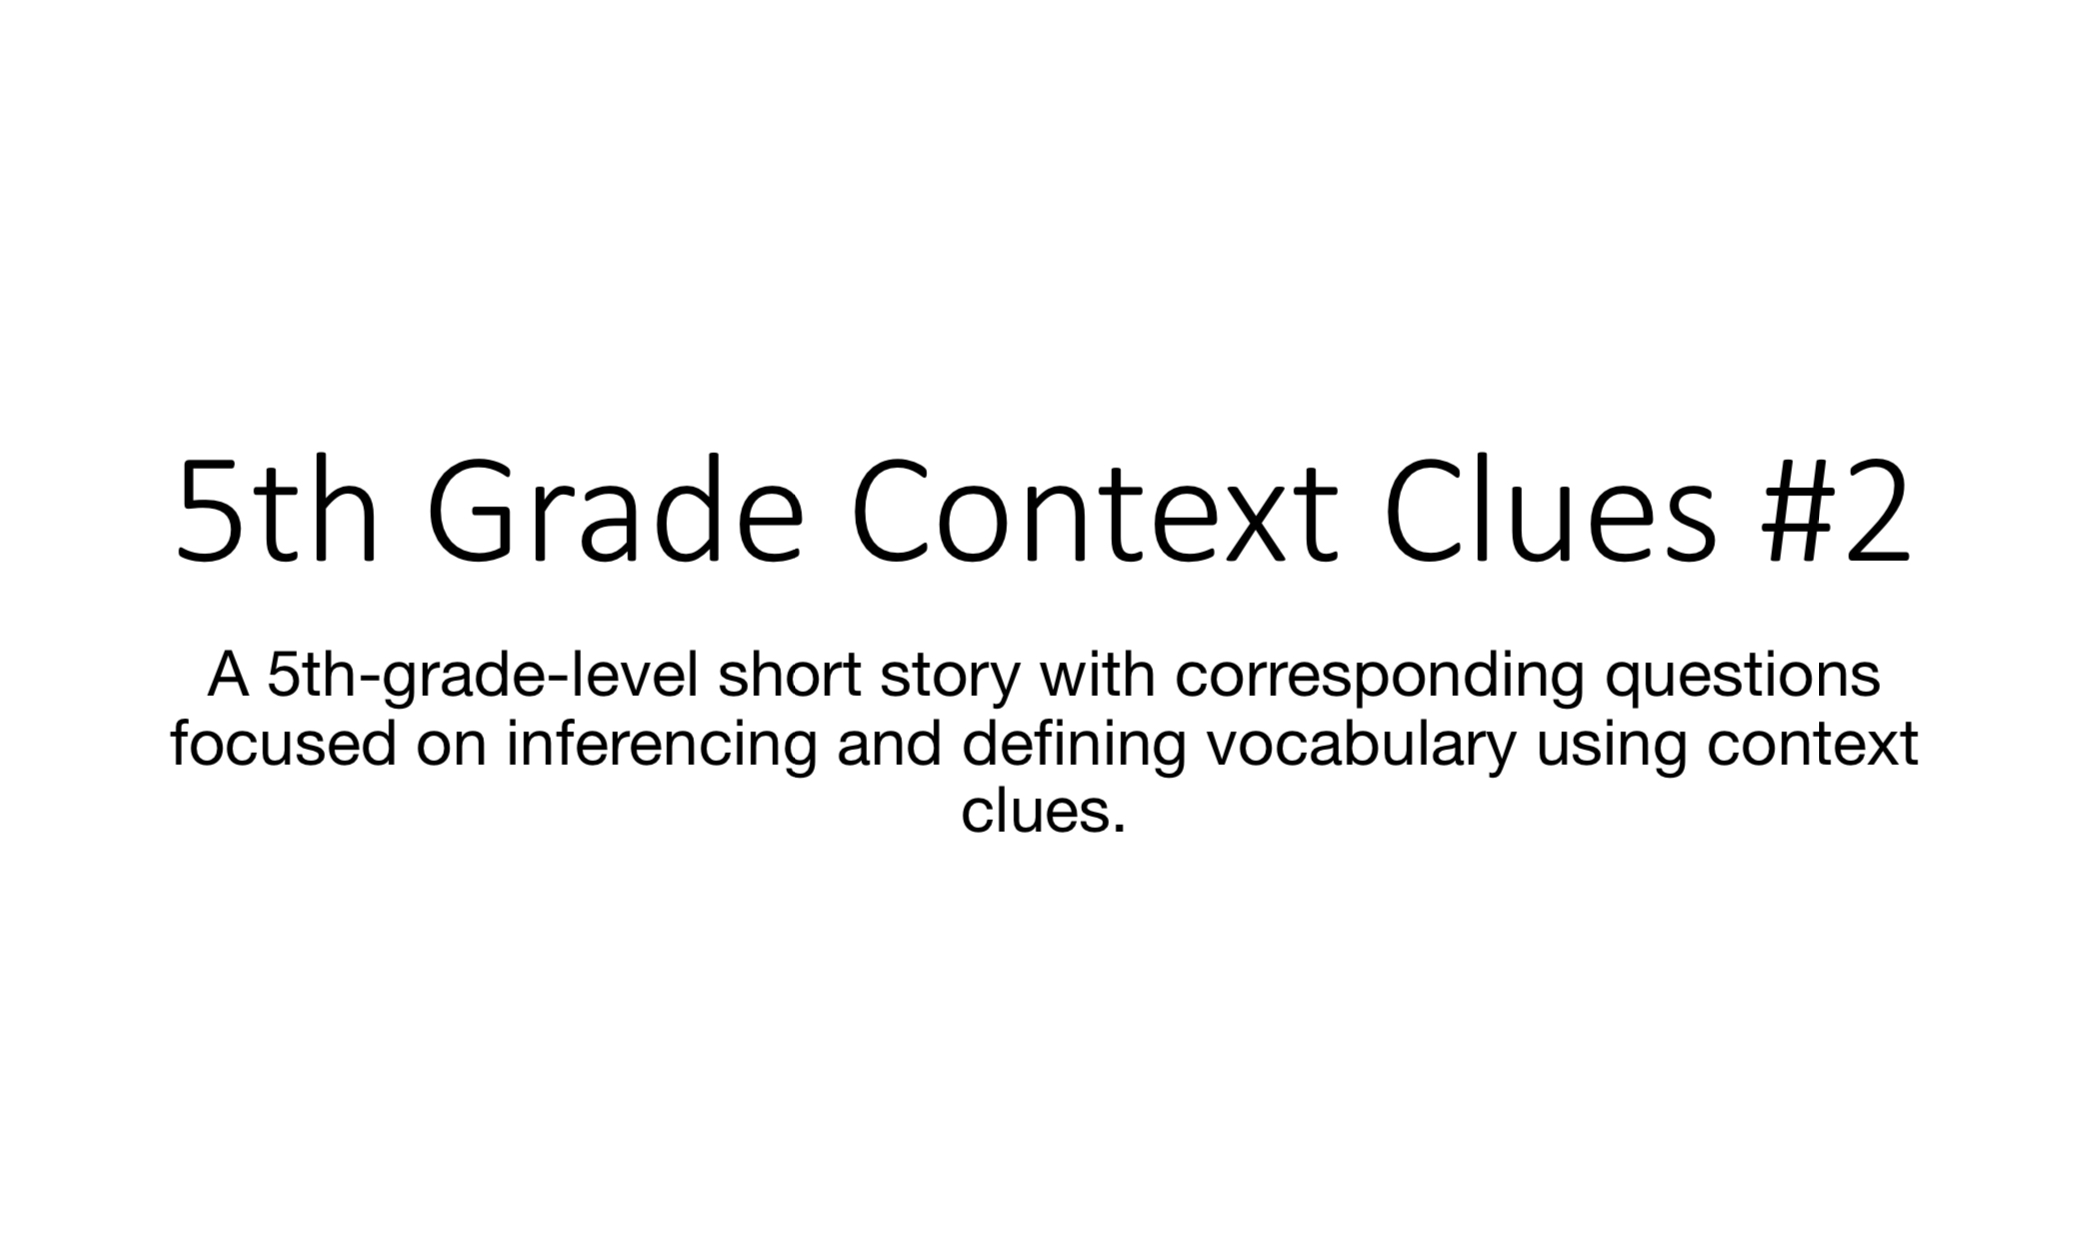 5th Grade Context Clues #2 image